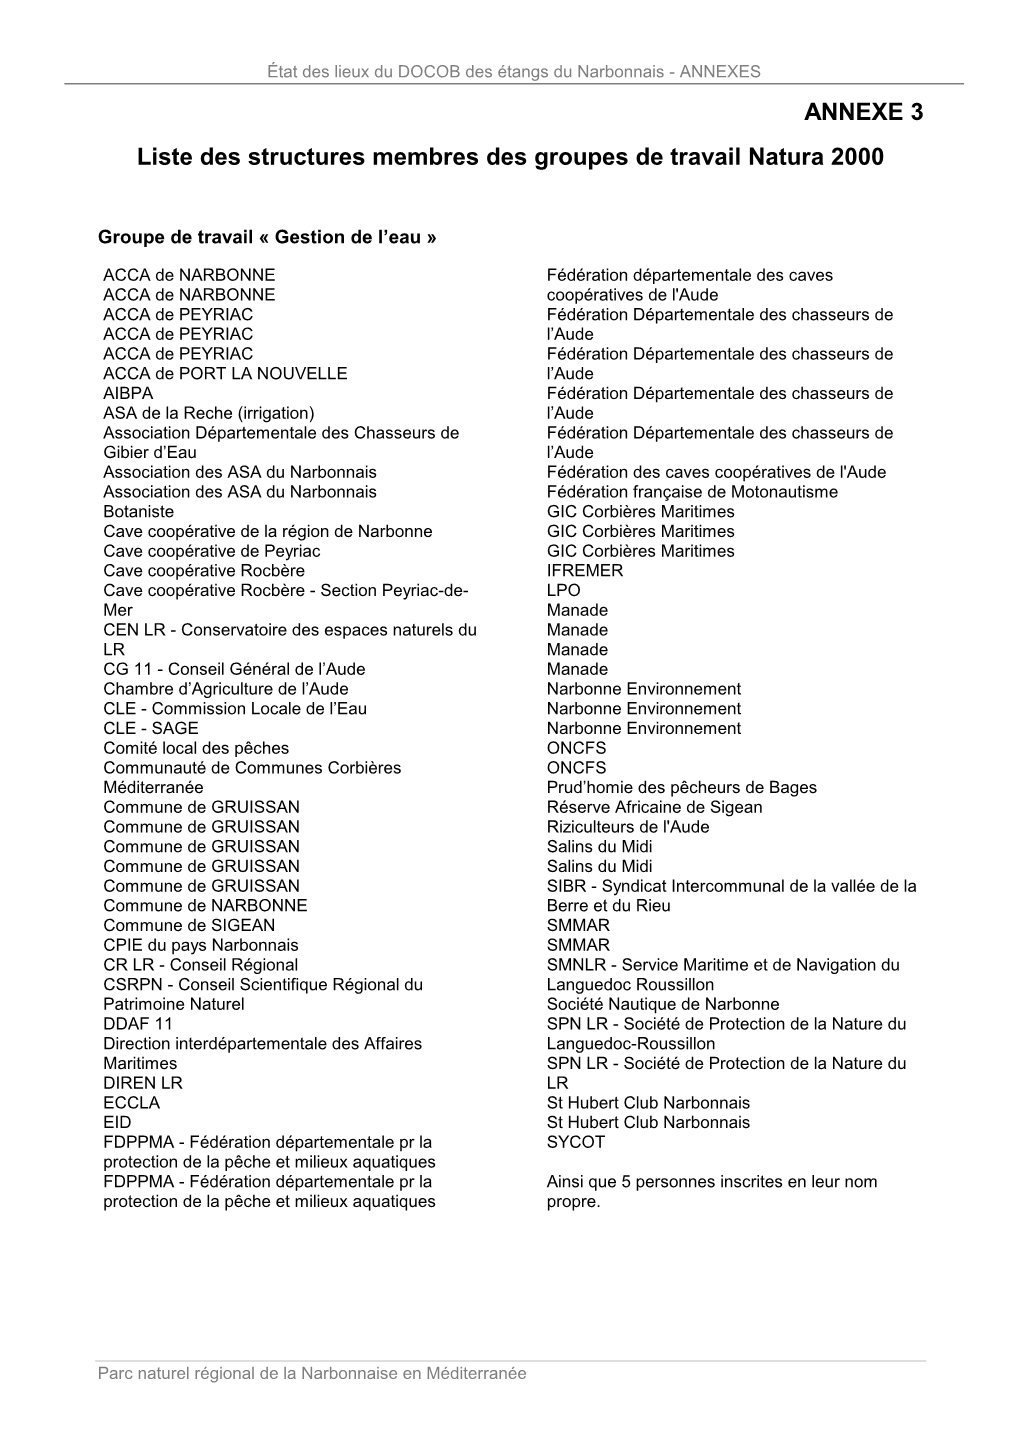 ANNEXE 3 Liste Des Structures Membres Des Groupes De Travail Natura 2000